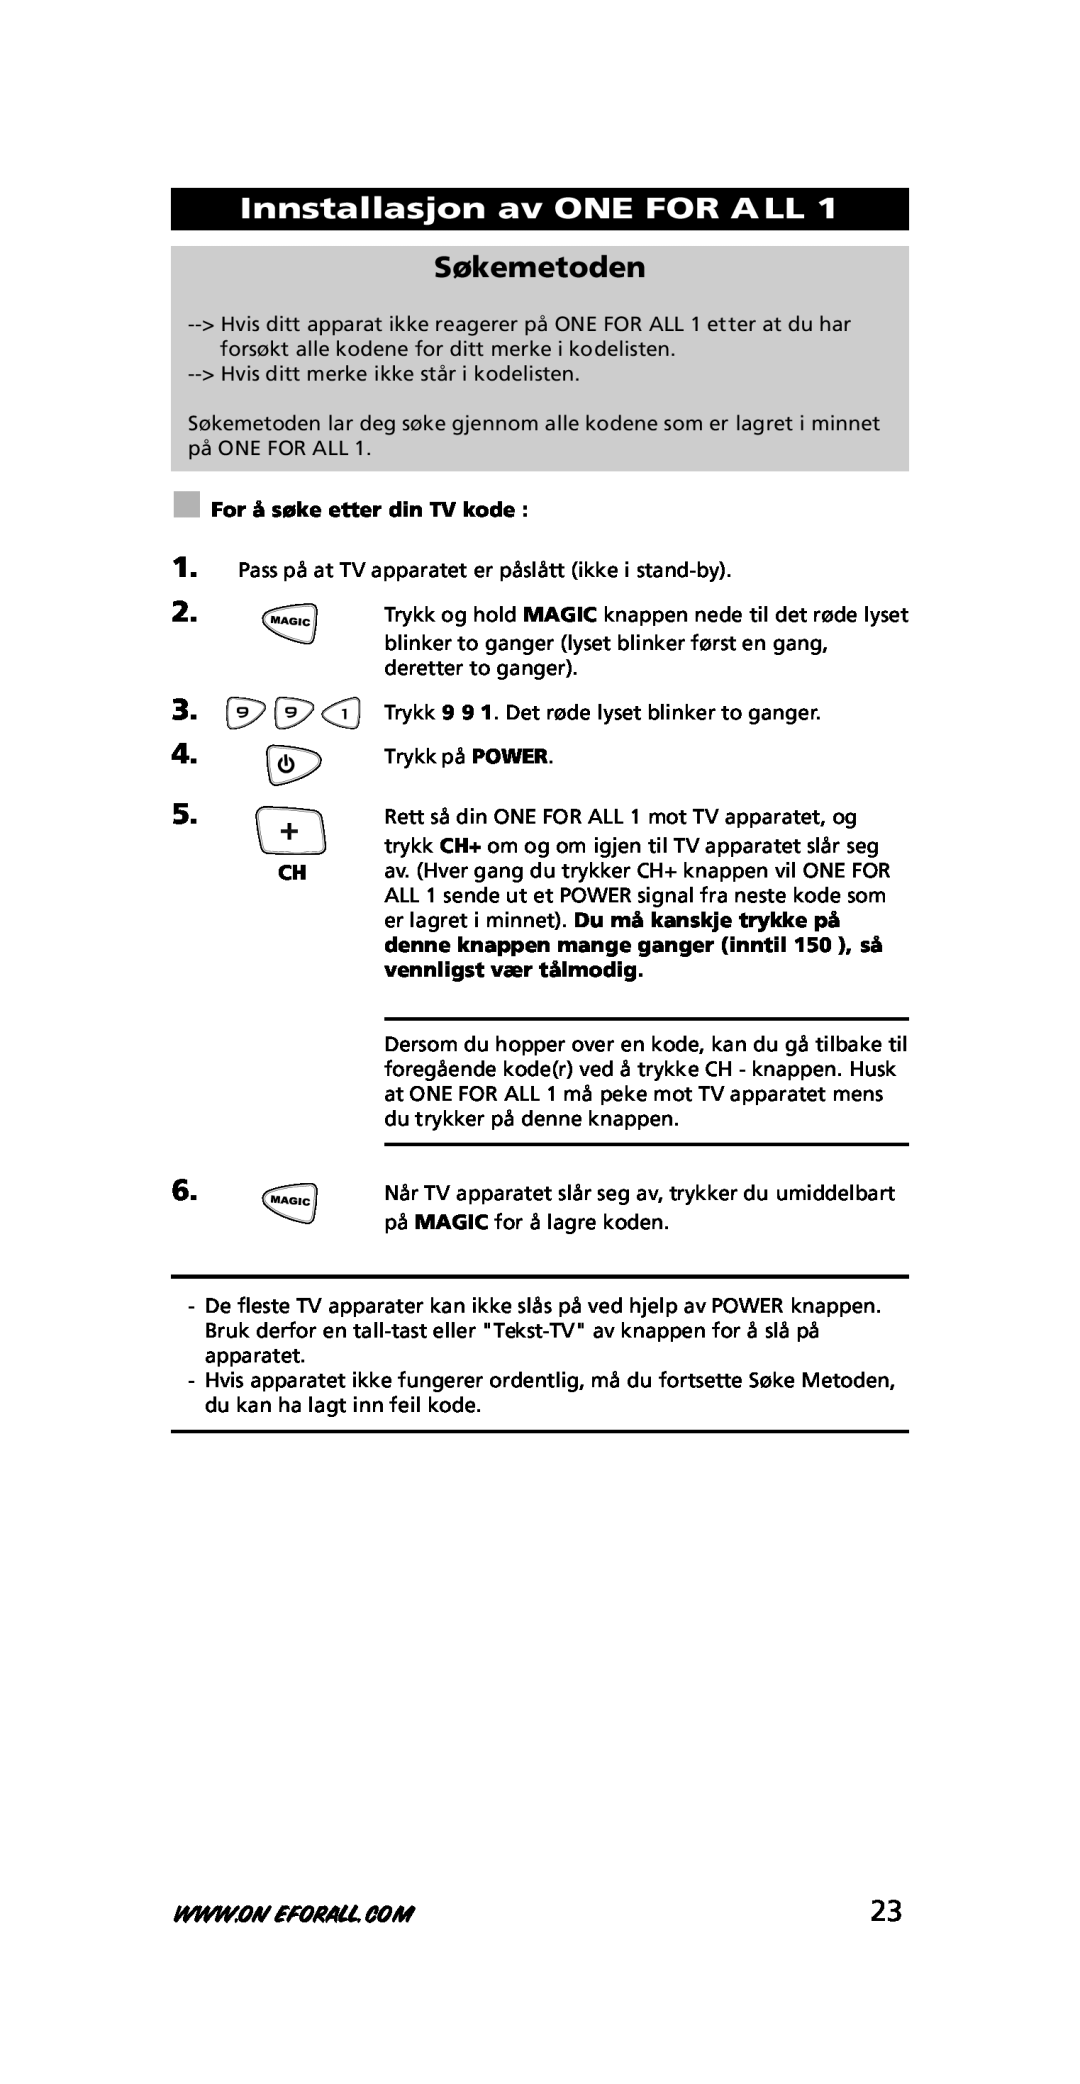 One for All URC-7711 instruction manual Innstallasjon av ONE FOR ALL, Søkemetoden, For å søke etter din TV kode 